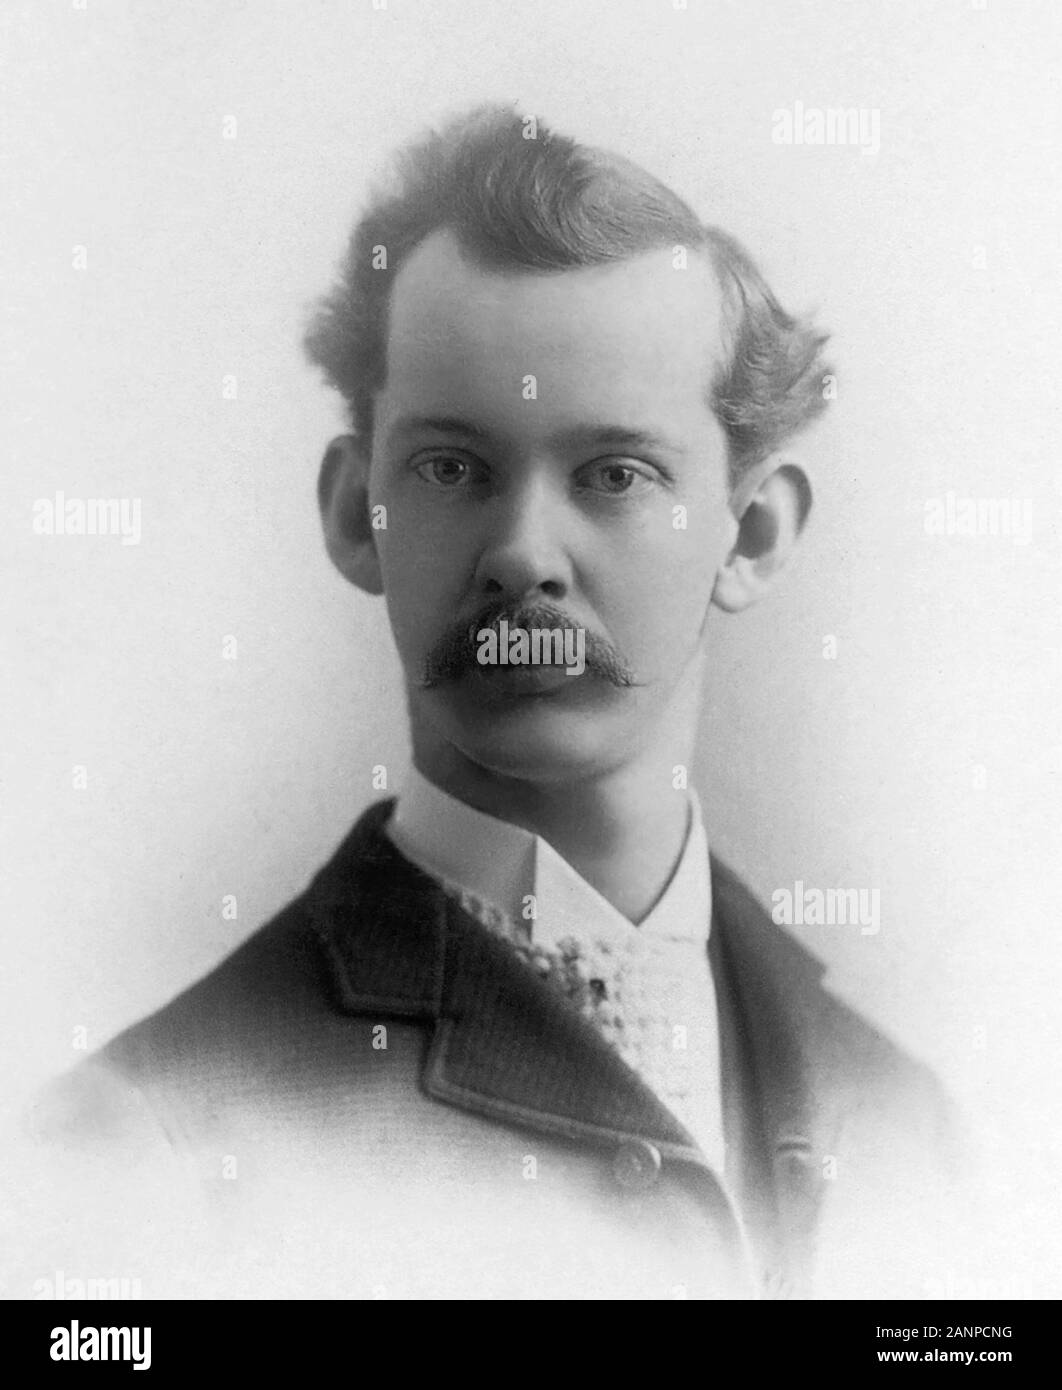 Wilbur Scoville Lincoln (1865 - 1942) était un pharmacien américain connu pour sa création du 'Scoville test organoleptique', désormais que l'Échelle de Scoville Banque D'Images